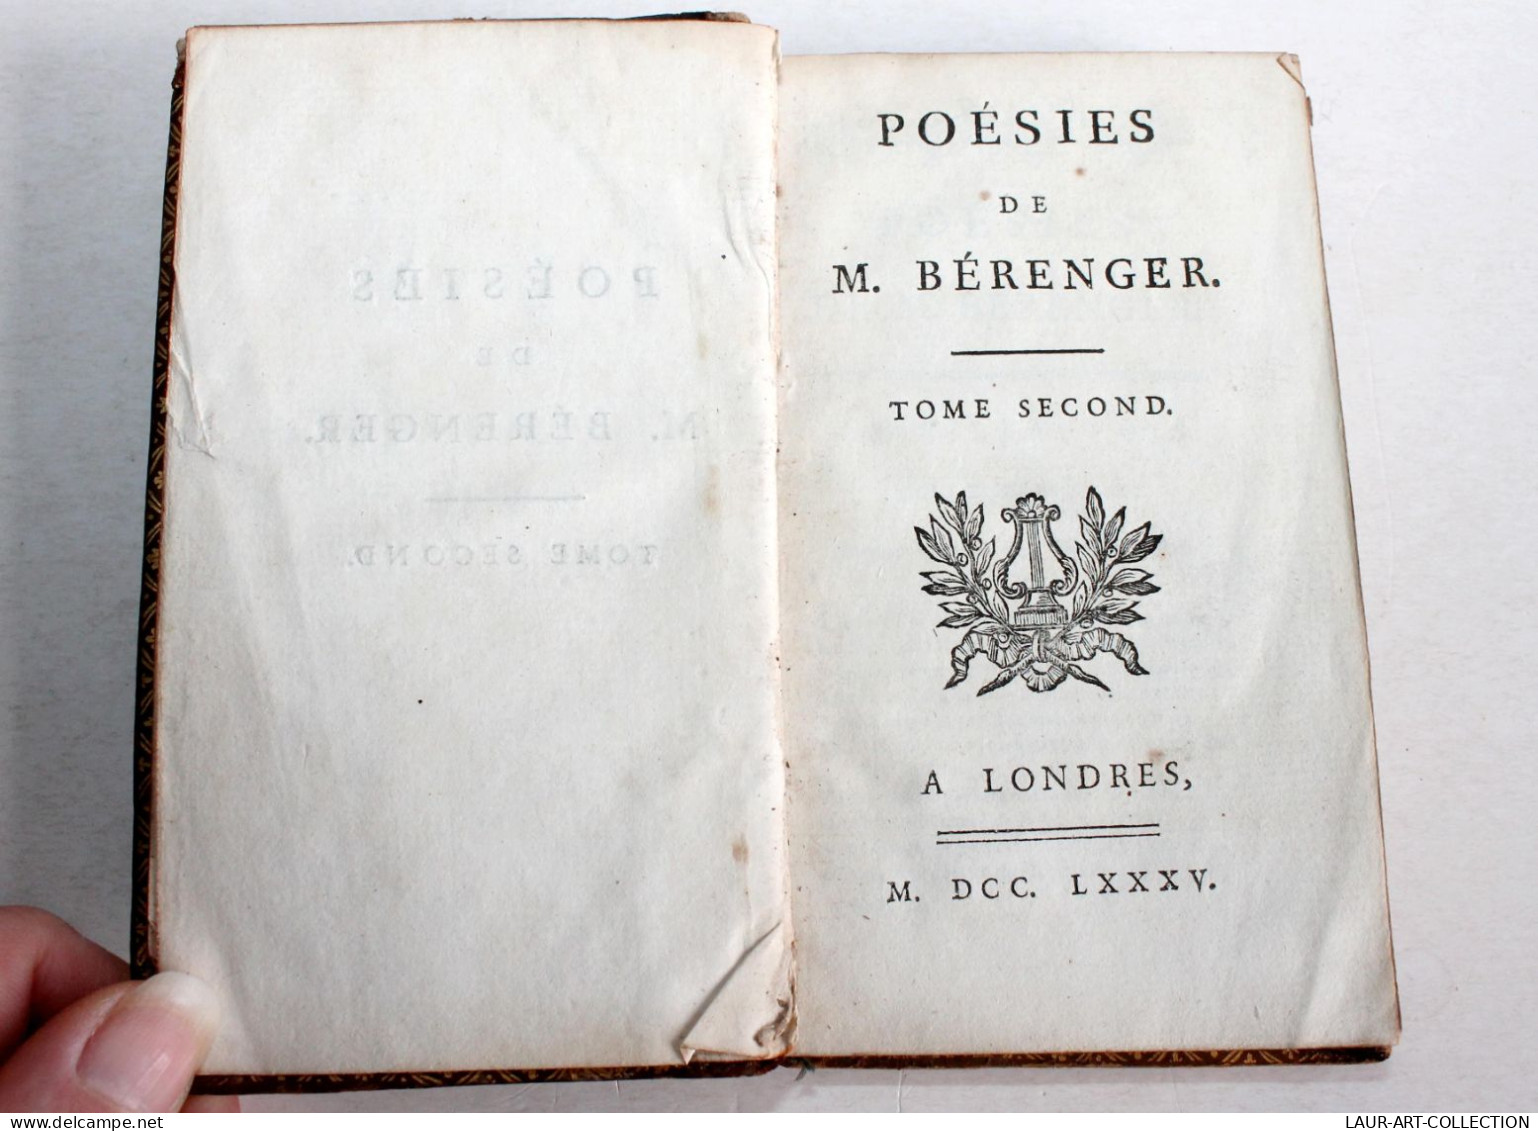 POESIES DE M. BERANGER TOME SECOND 1785 A LONDRES, LIVRE 18e CONTENANT 55 PIECES / ANCIEN LIVRE XVIIIe SIECLE (1803.132) - Franse Schrijvers